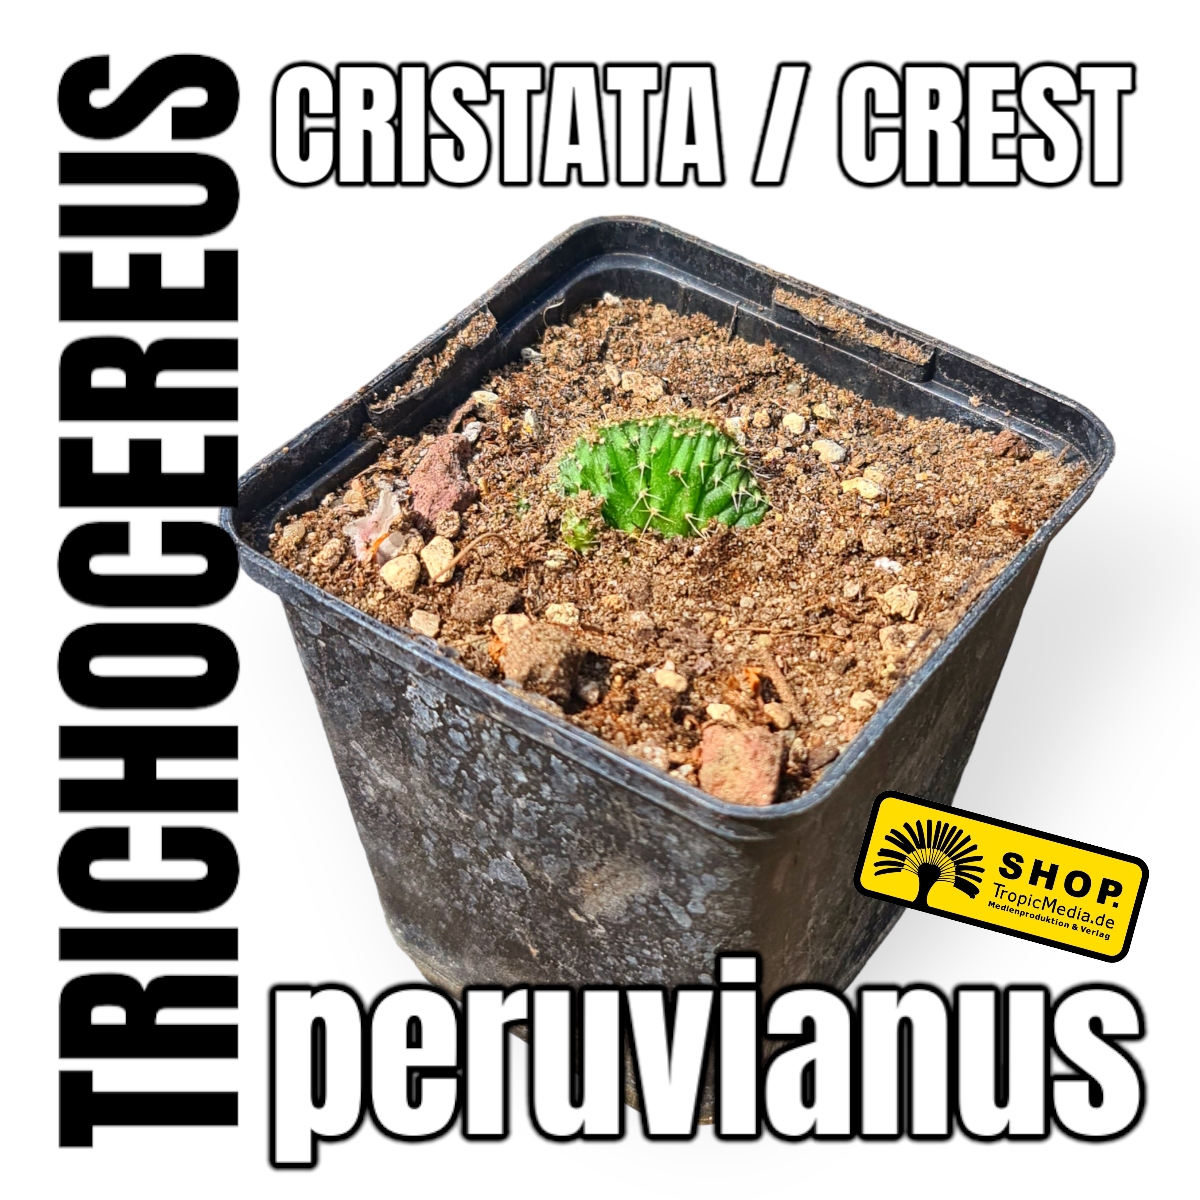 Trichocereus peruvianus Cristata Crest